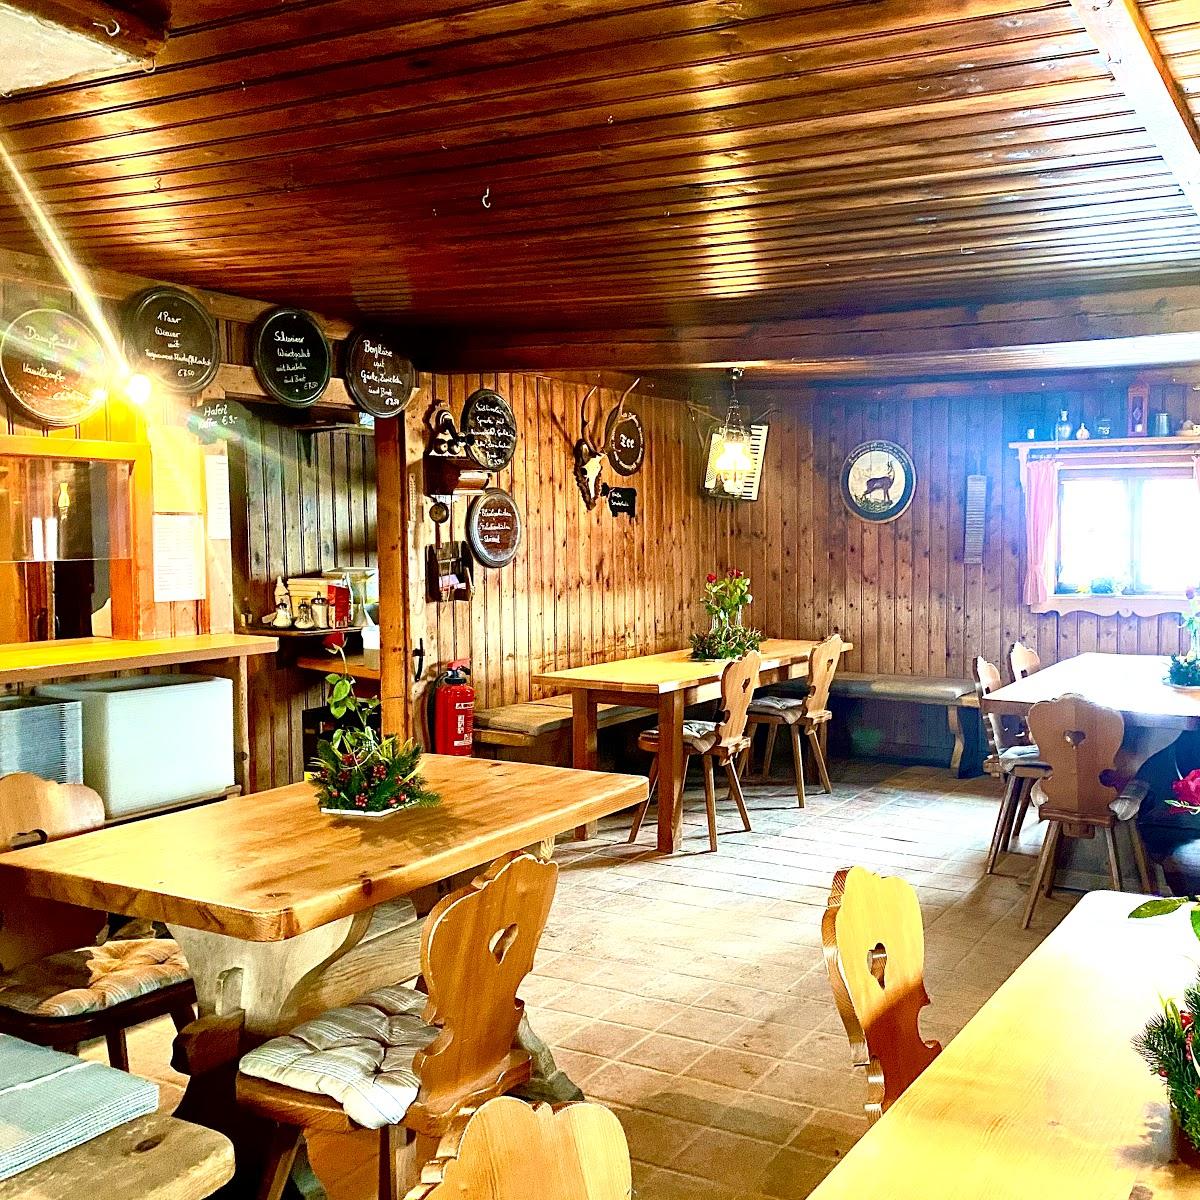 Restaurant "Aueralm" in Bad Wiessee